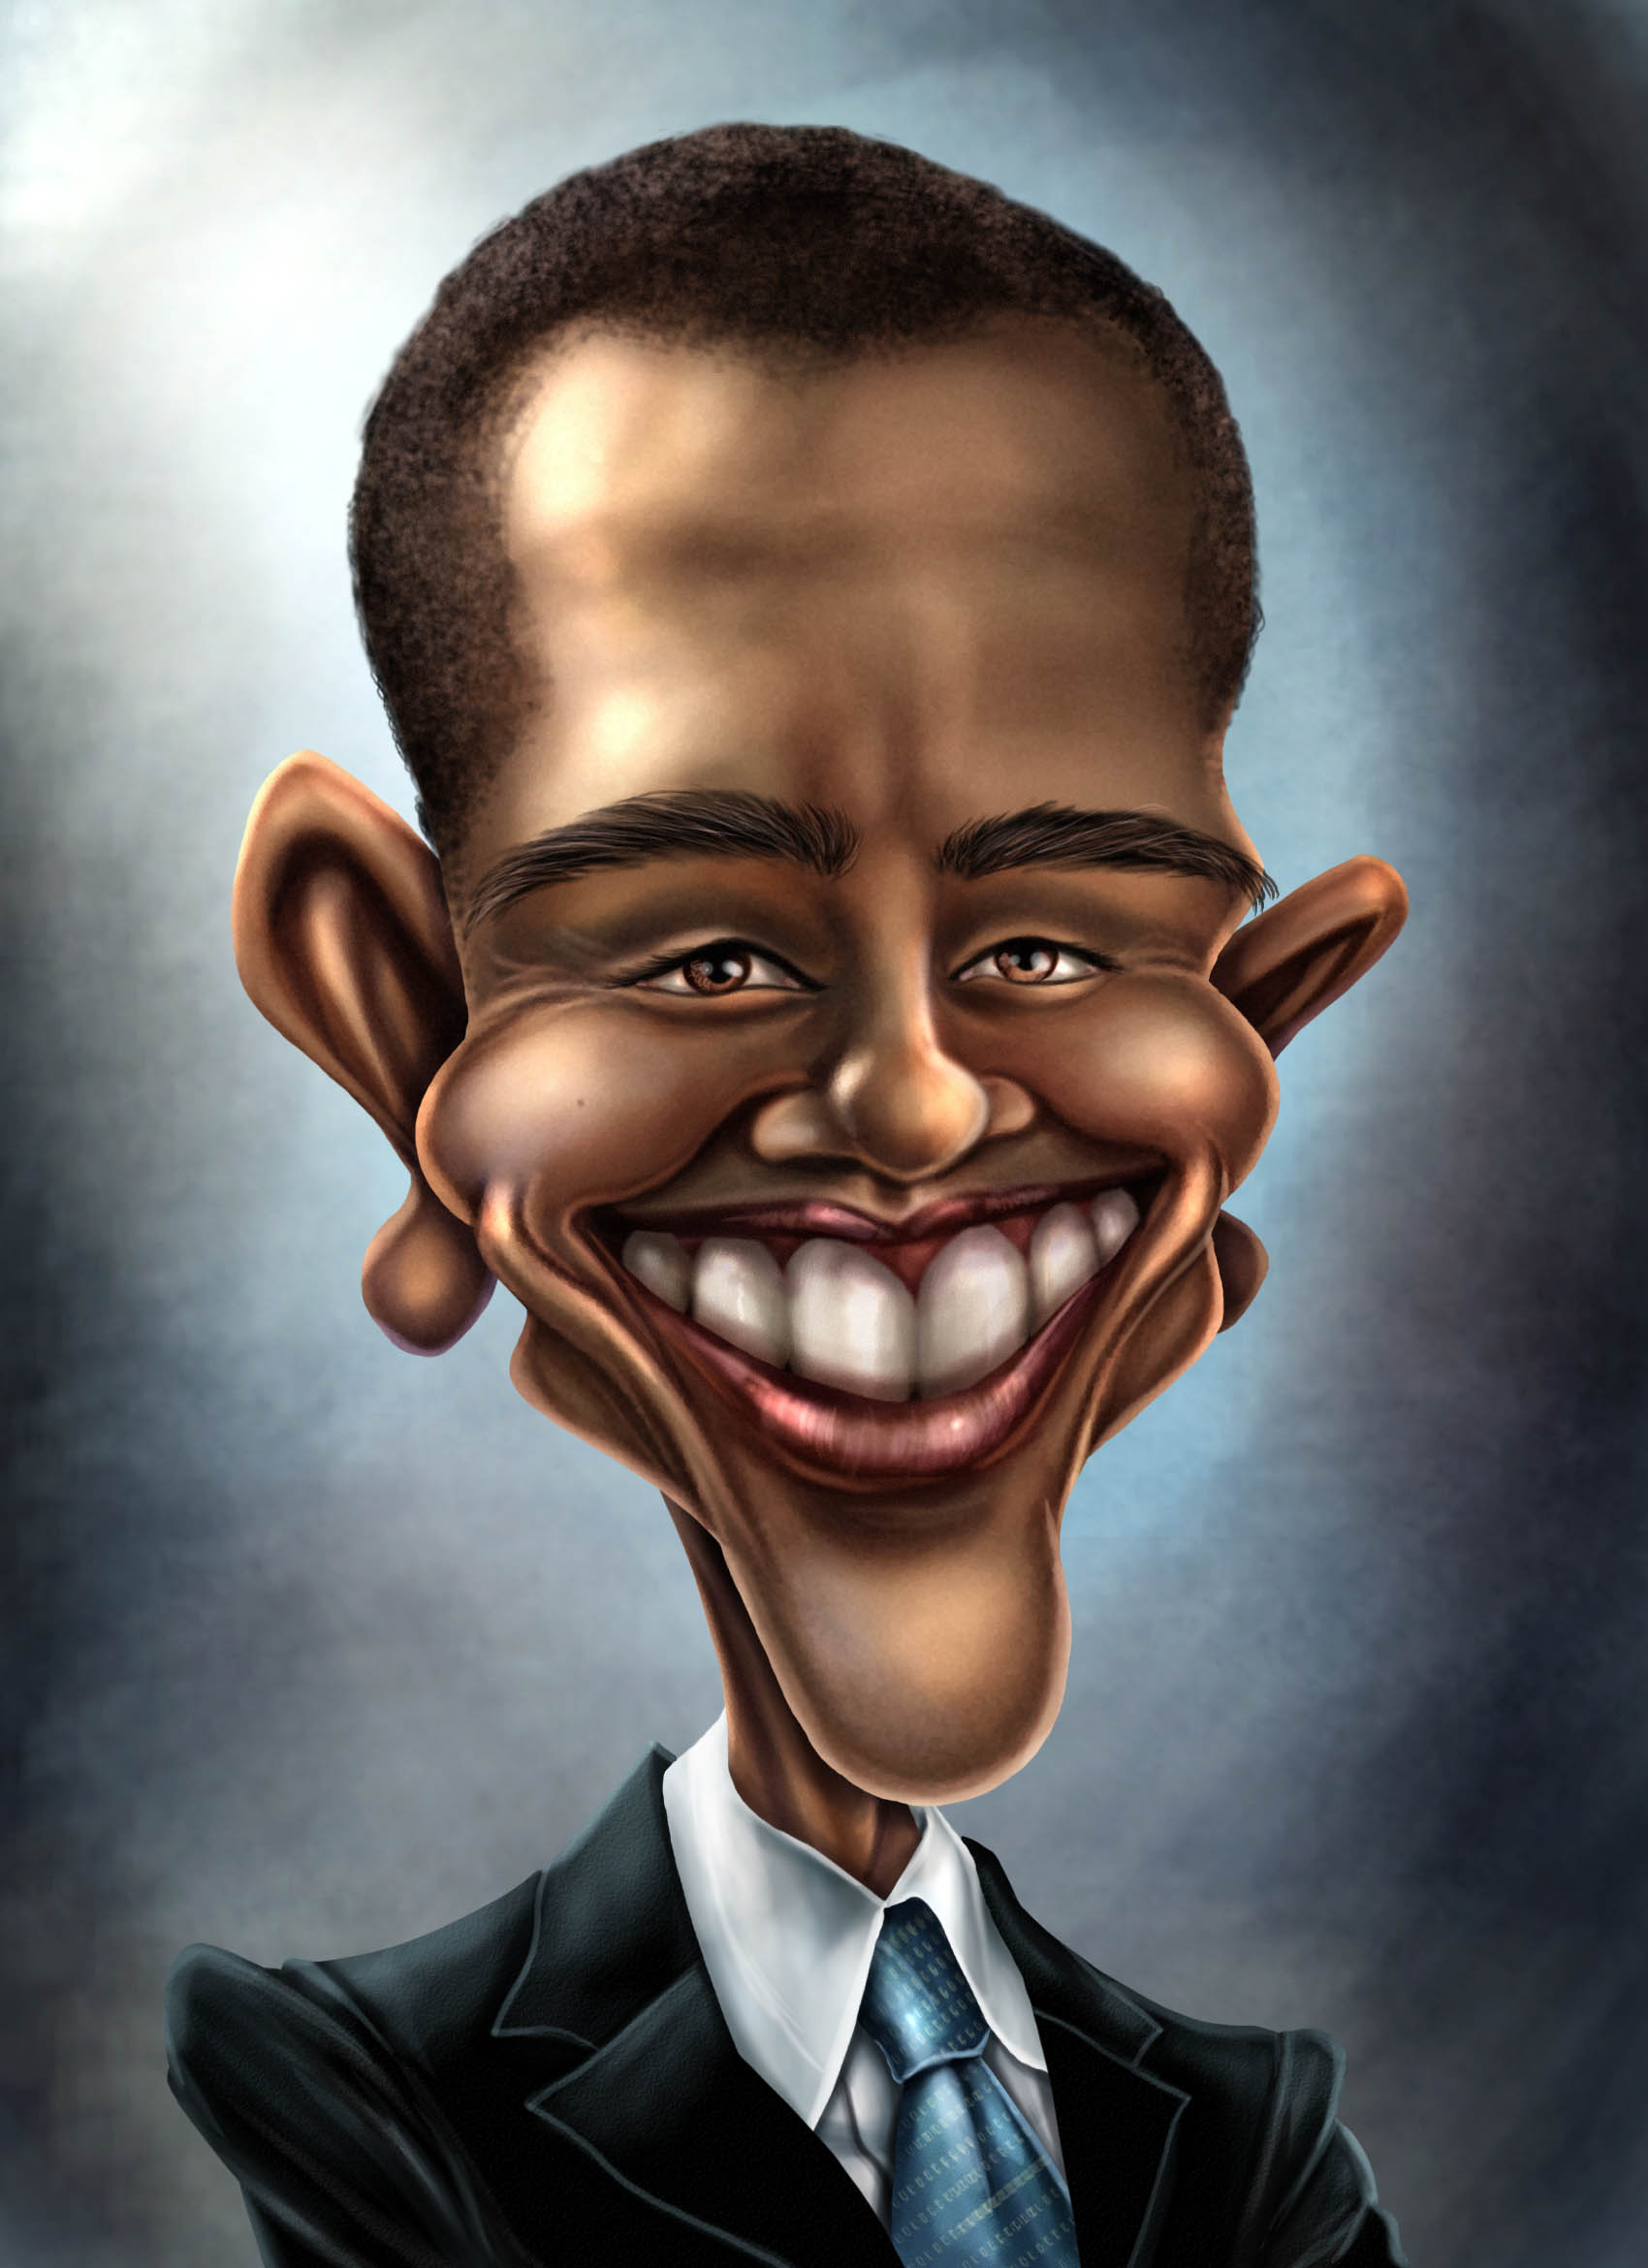 Сатирические изображения человека. Сатирический портрет Обама. Карикатурные портреты Обамы. Сатирические образы человека. Сатиричечкие образ человека.